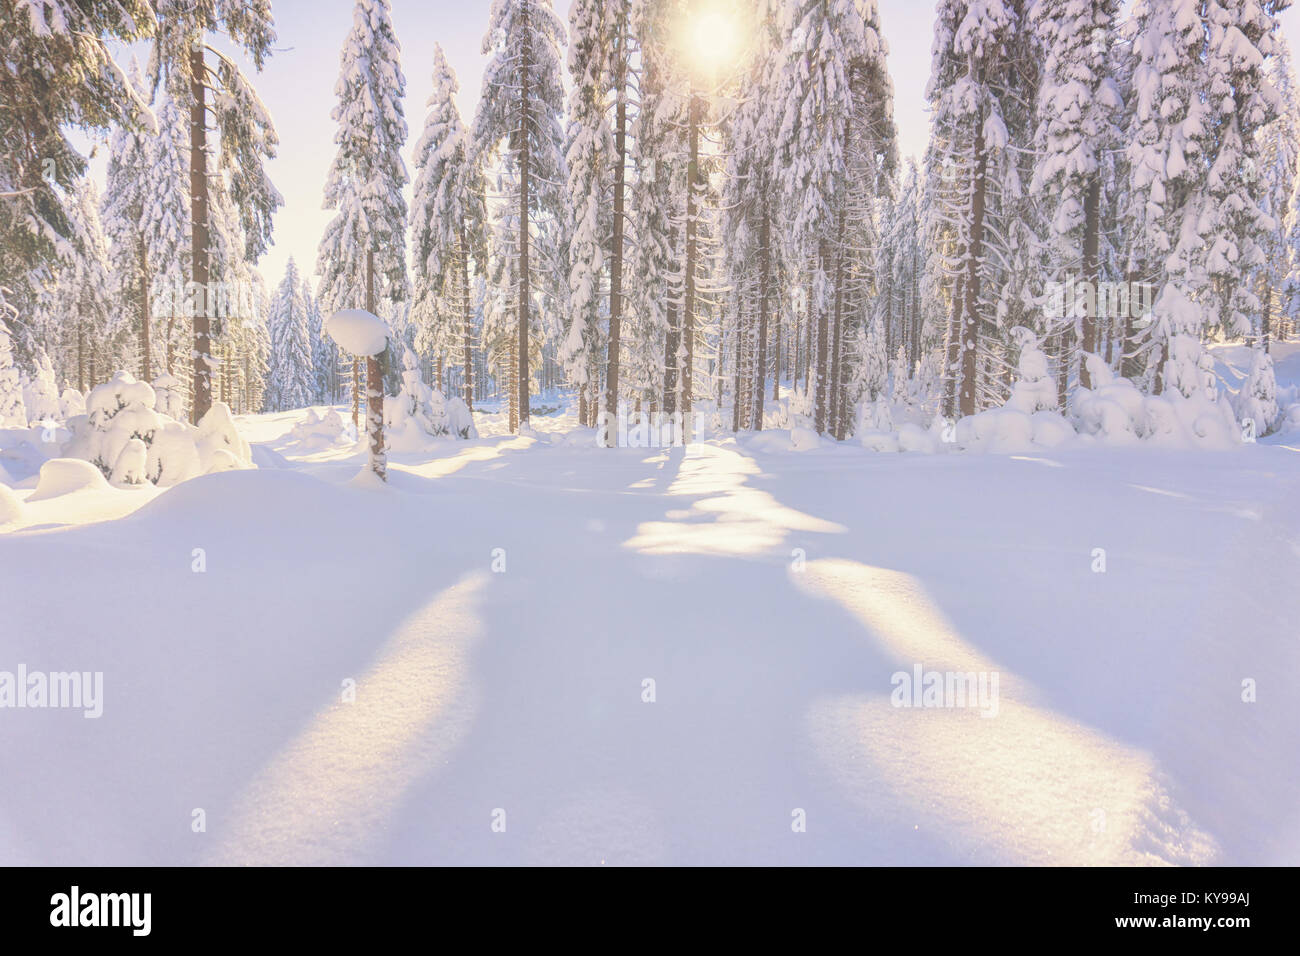 La foresta di conifere illuminata dal sole di nebbioso giorno d'inverno. Alberi coperti di neve fresca Foto Stock